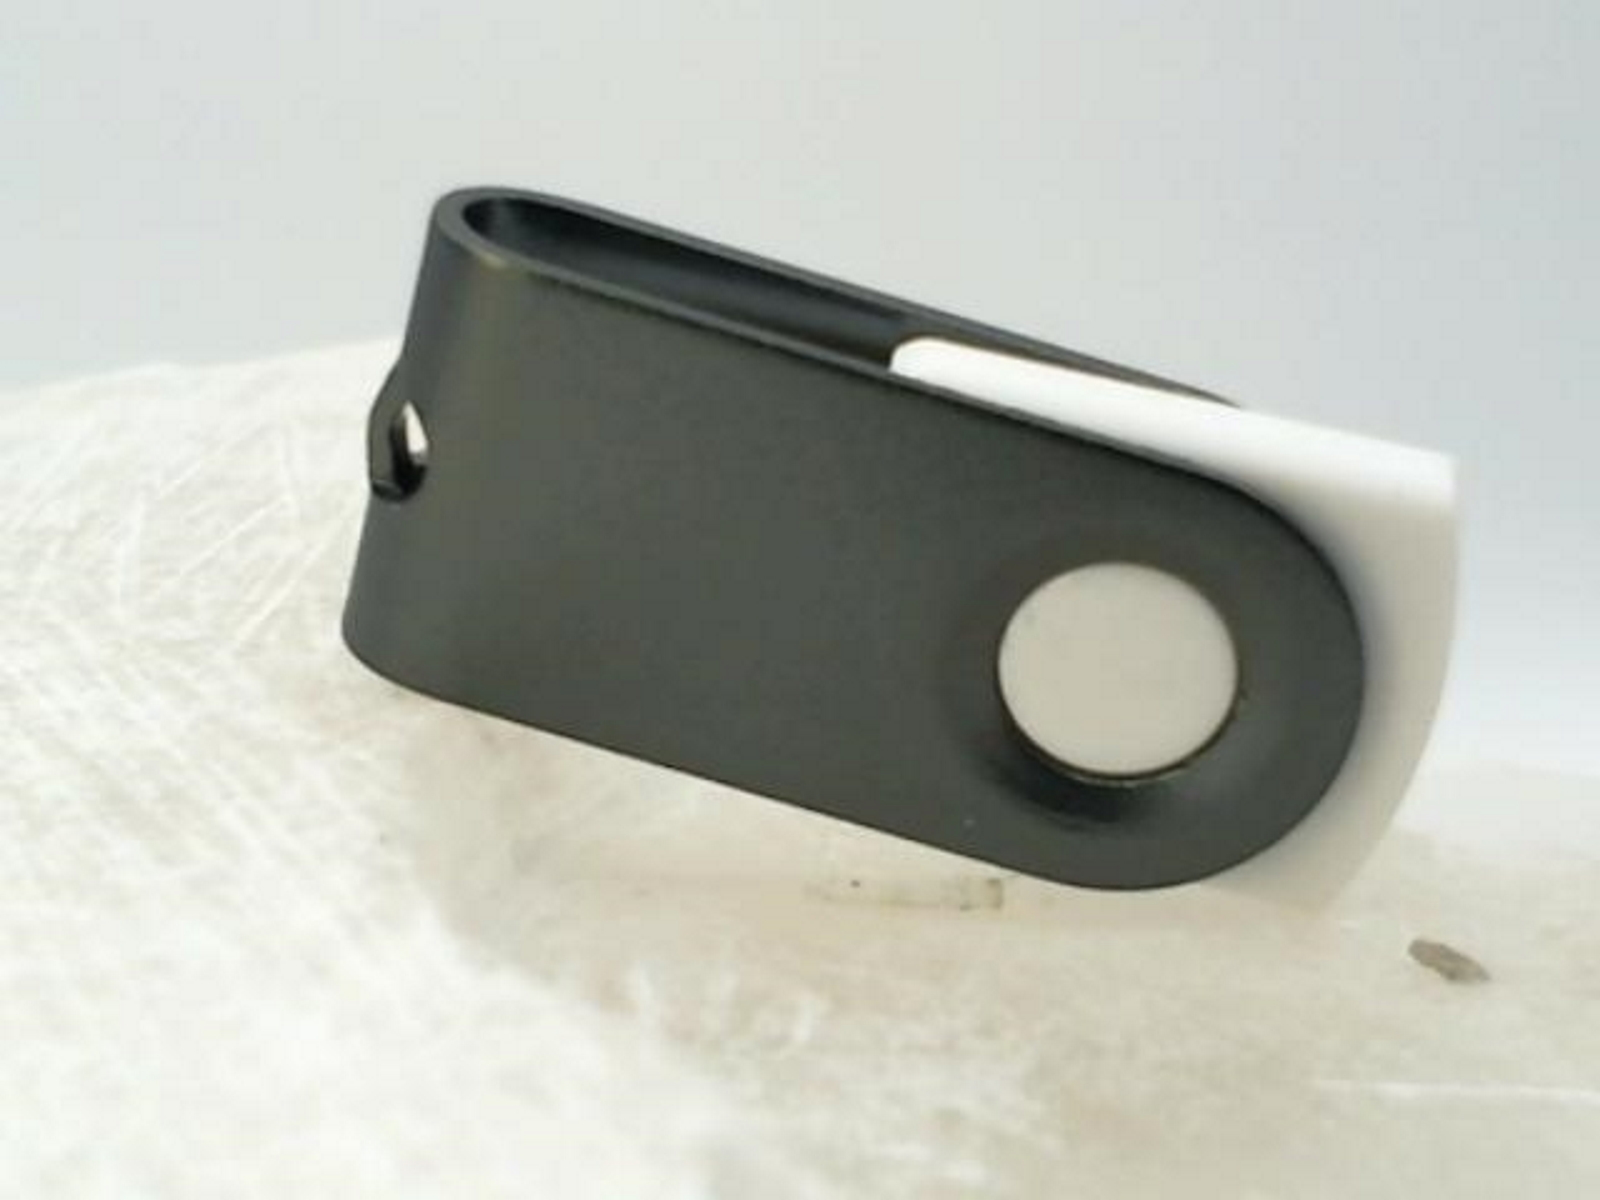 USB GERMANY ® 128 (Weiß-Graumetall, GB) USB-Stick MINI-SWIVEL